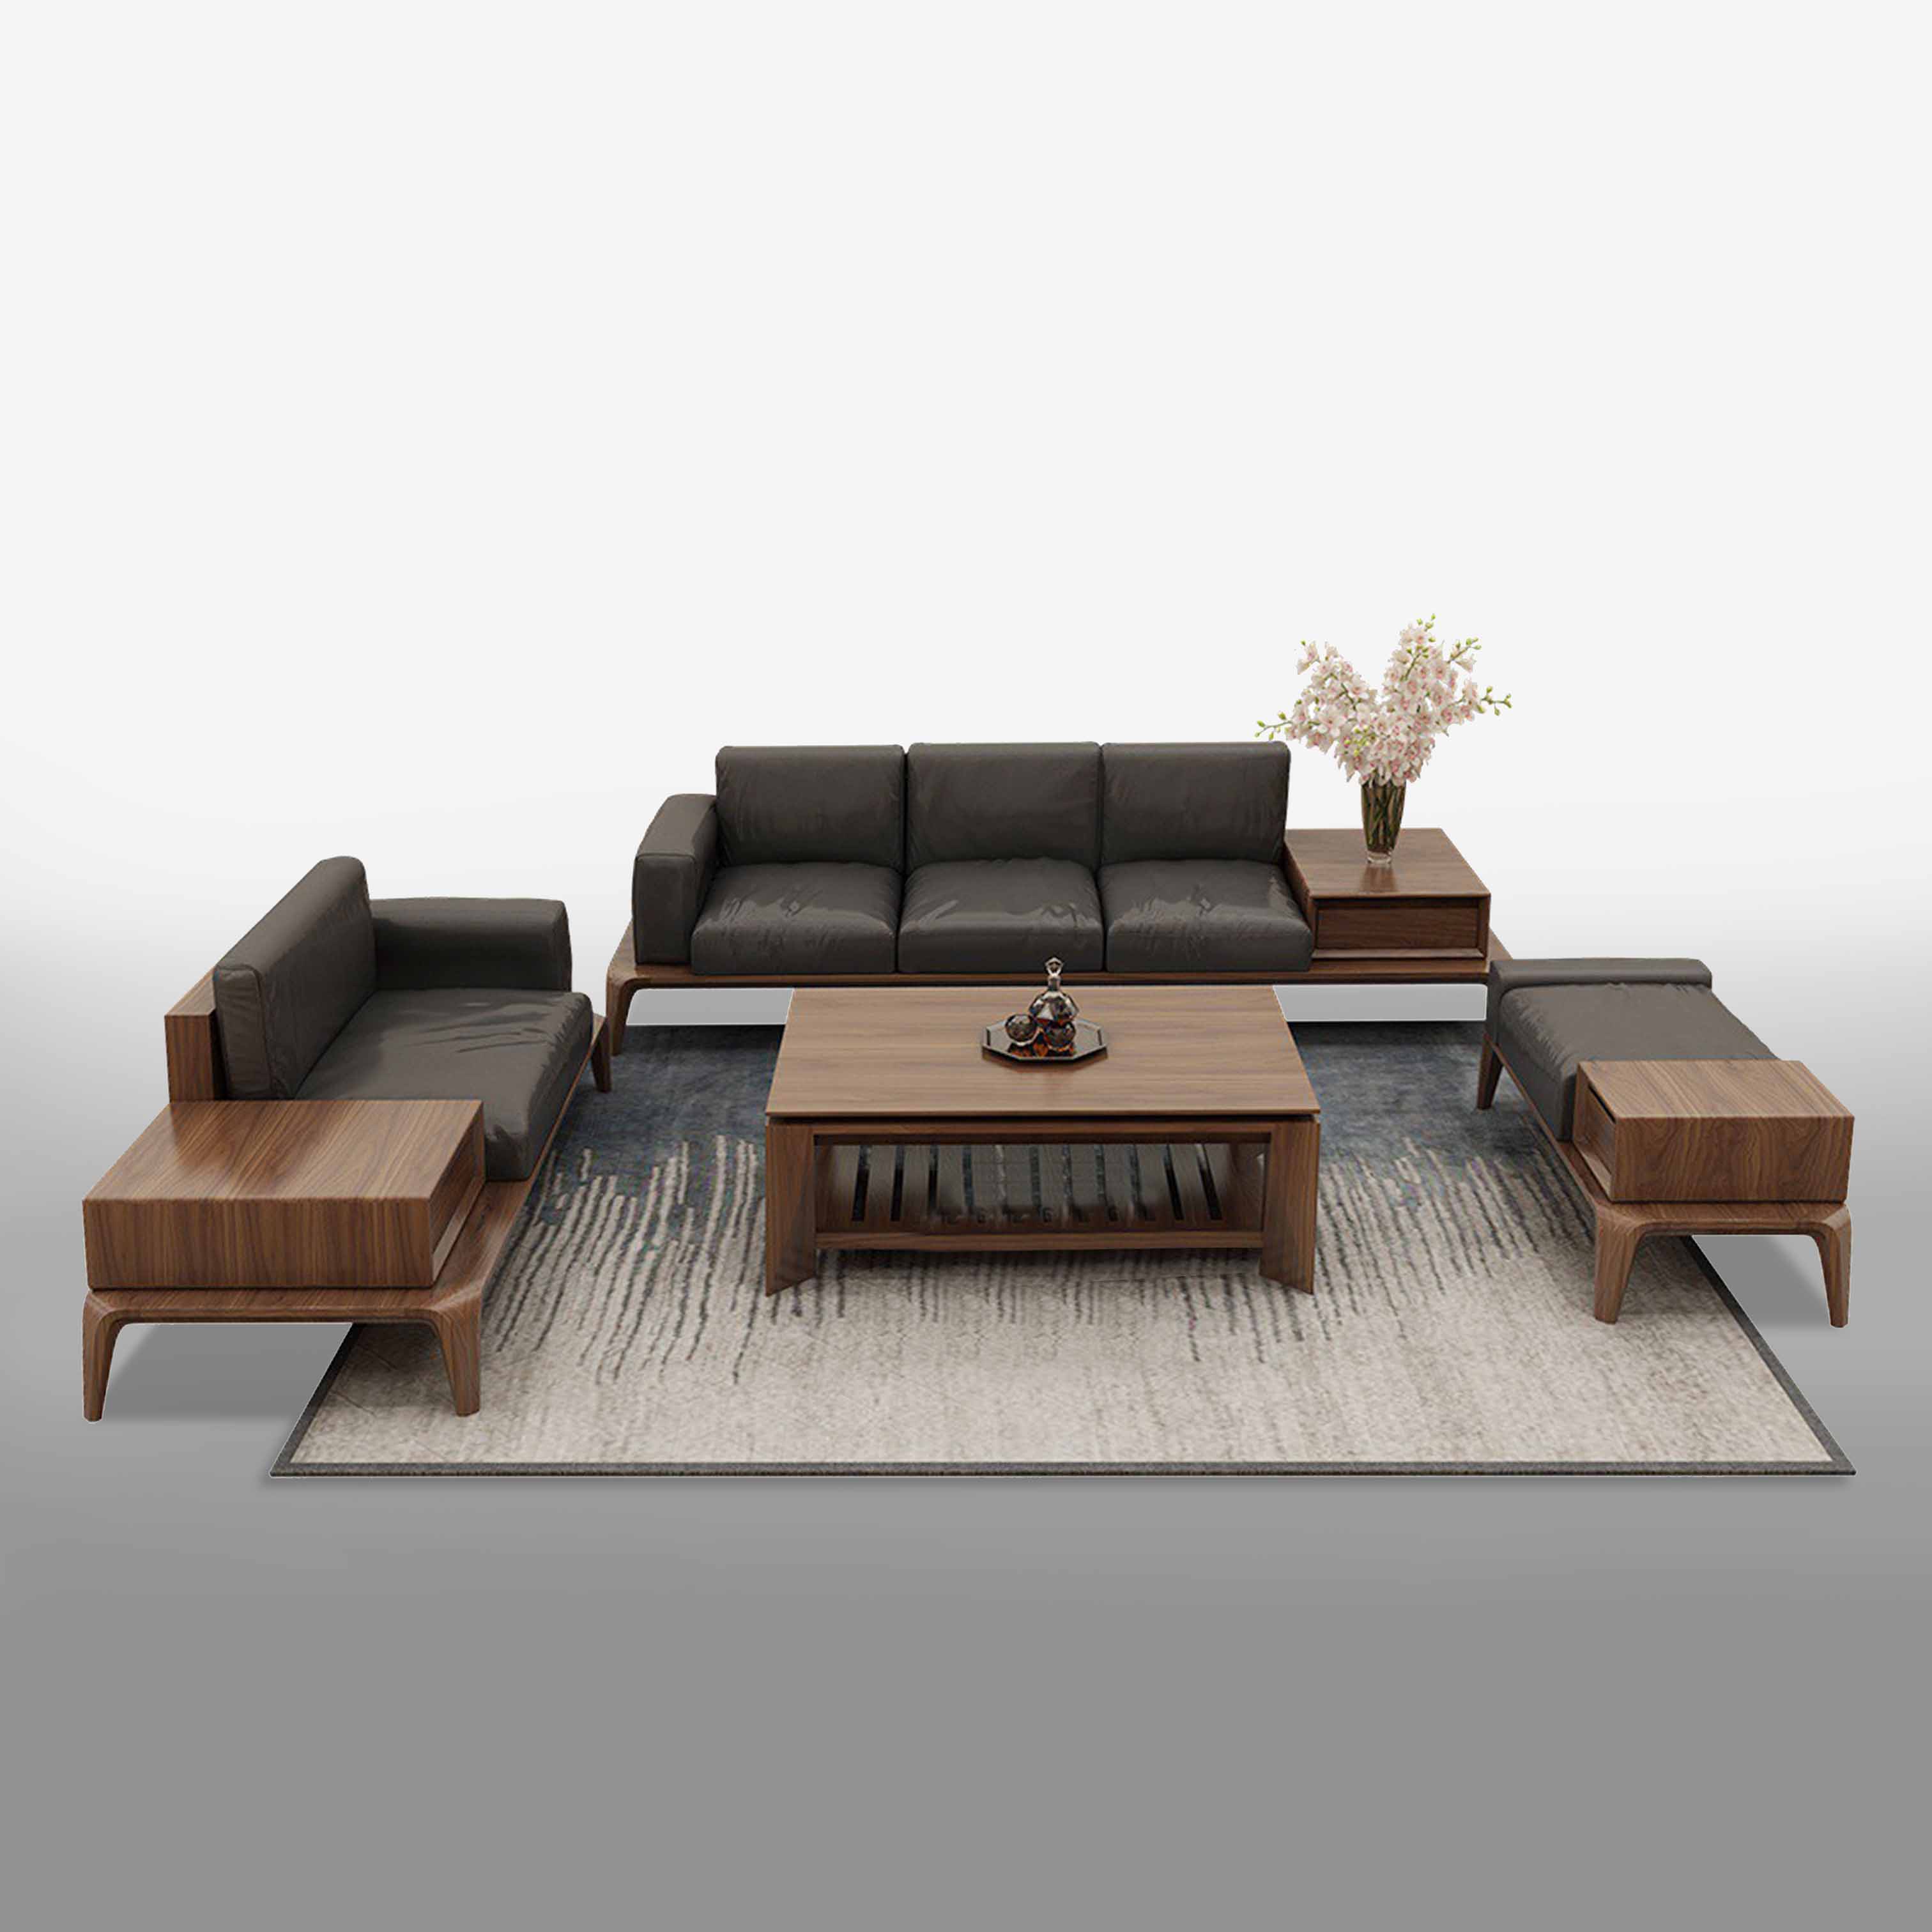 Rectangular sofa set - BG11LHFU